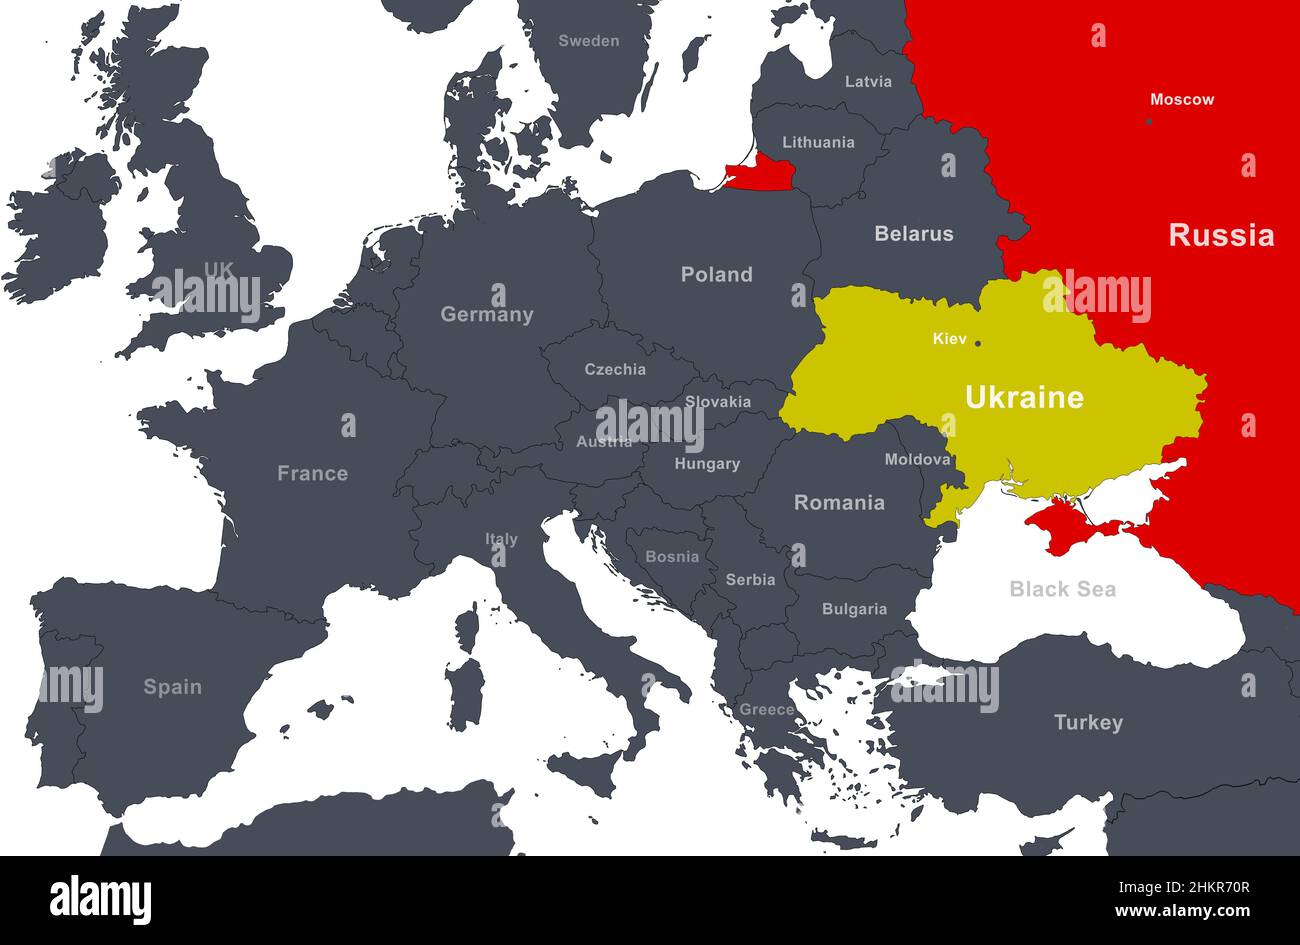 todo-lo-mejor-lima-desnudo-mapa-politico-de-rusia-y-ucrania-microbio